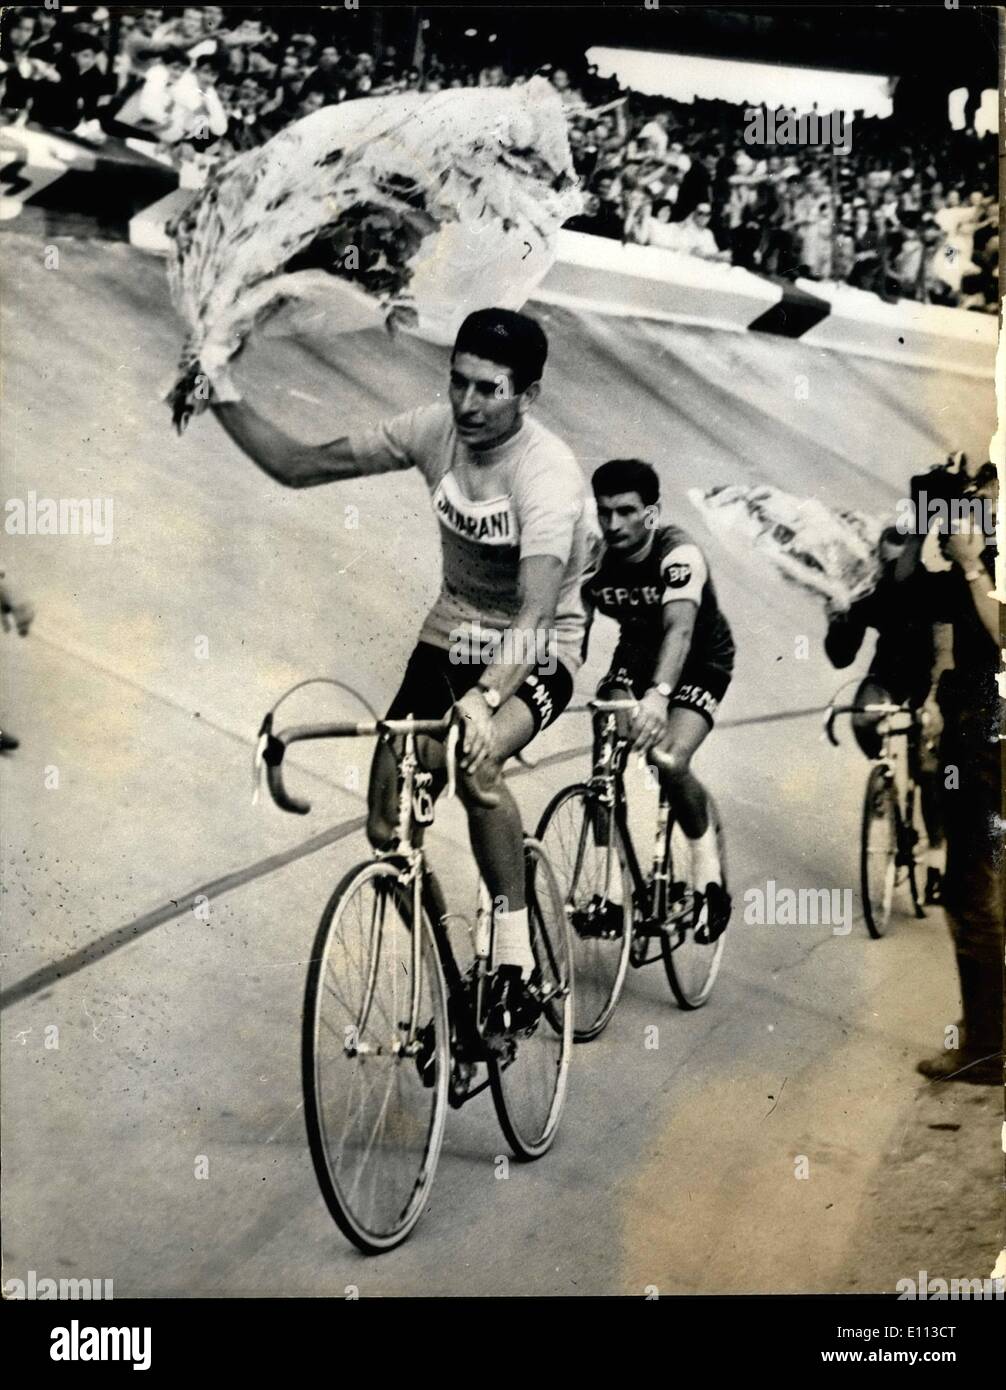 Juillet 07, 1975 - Italien remporte le tour de France. L'Italien Felice Gimondi a remporté hier le Tour de France, dans sa première année en tant que cycliste professionnel. Photo montre Felice Gimondi vu pendant son tour d'honneur - après la finale du Tour de France. Banque D'Images